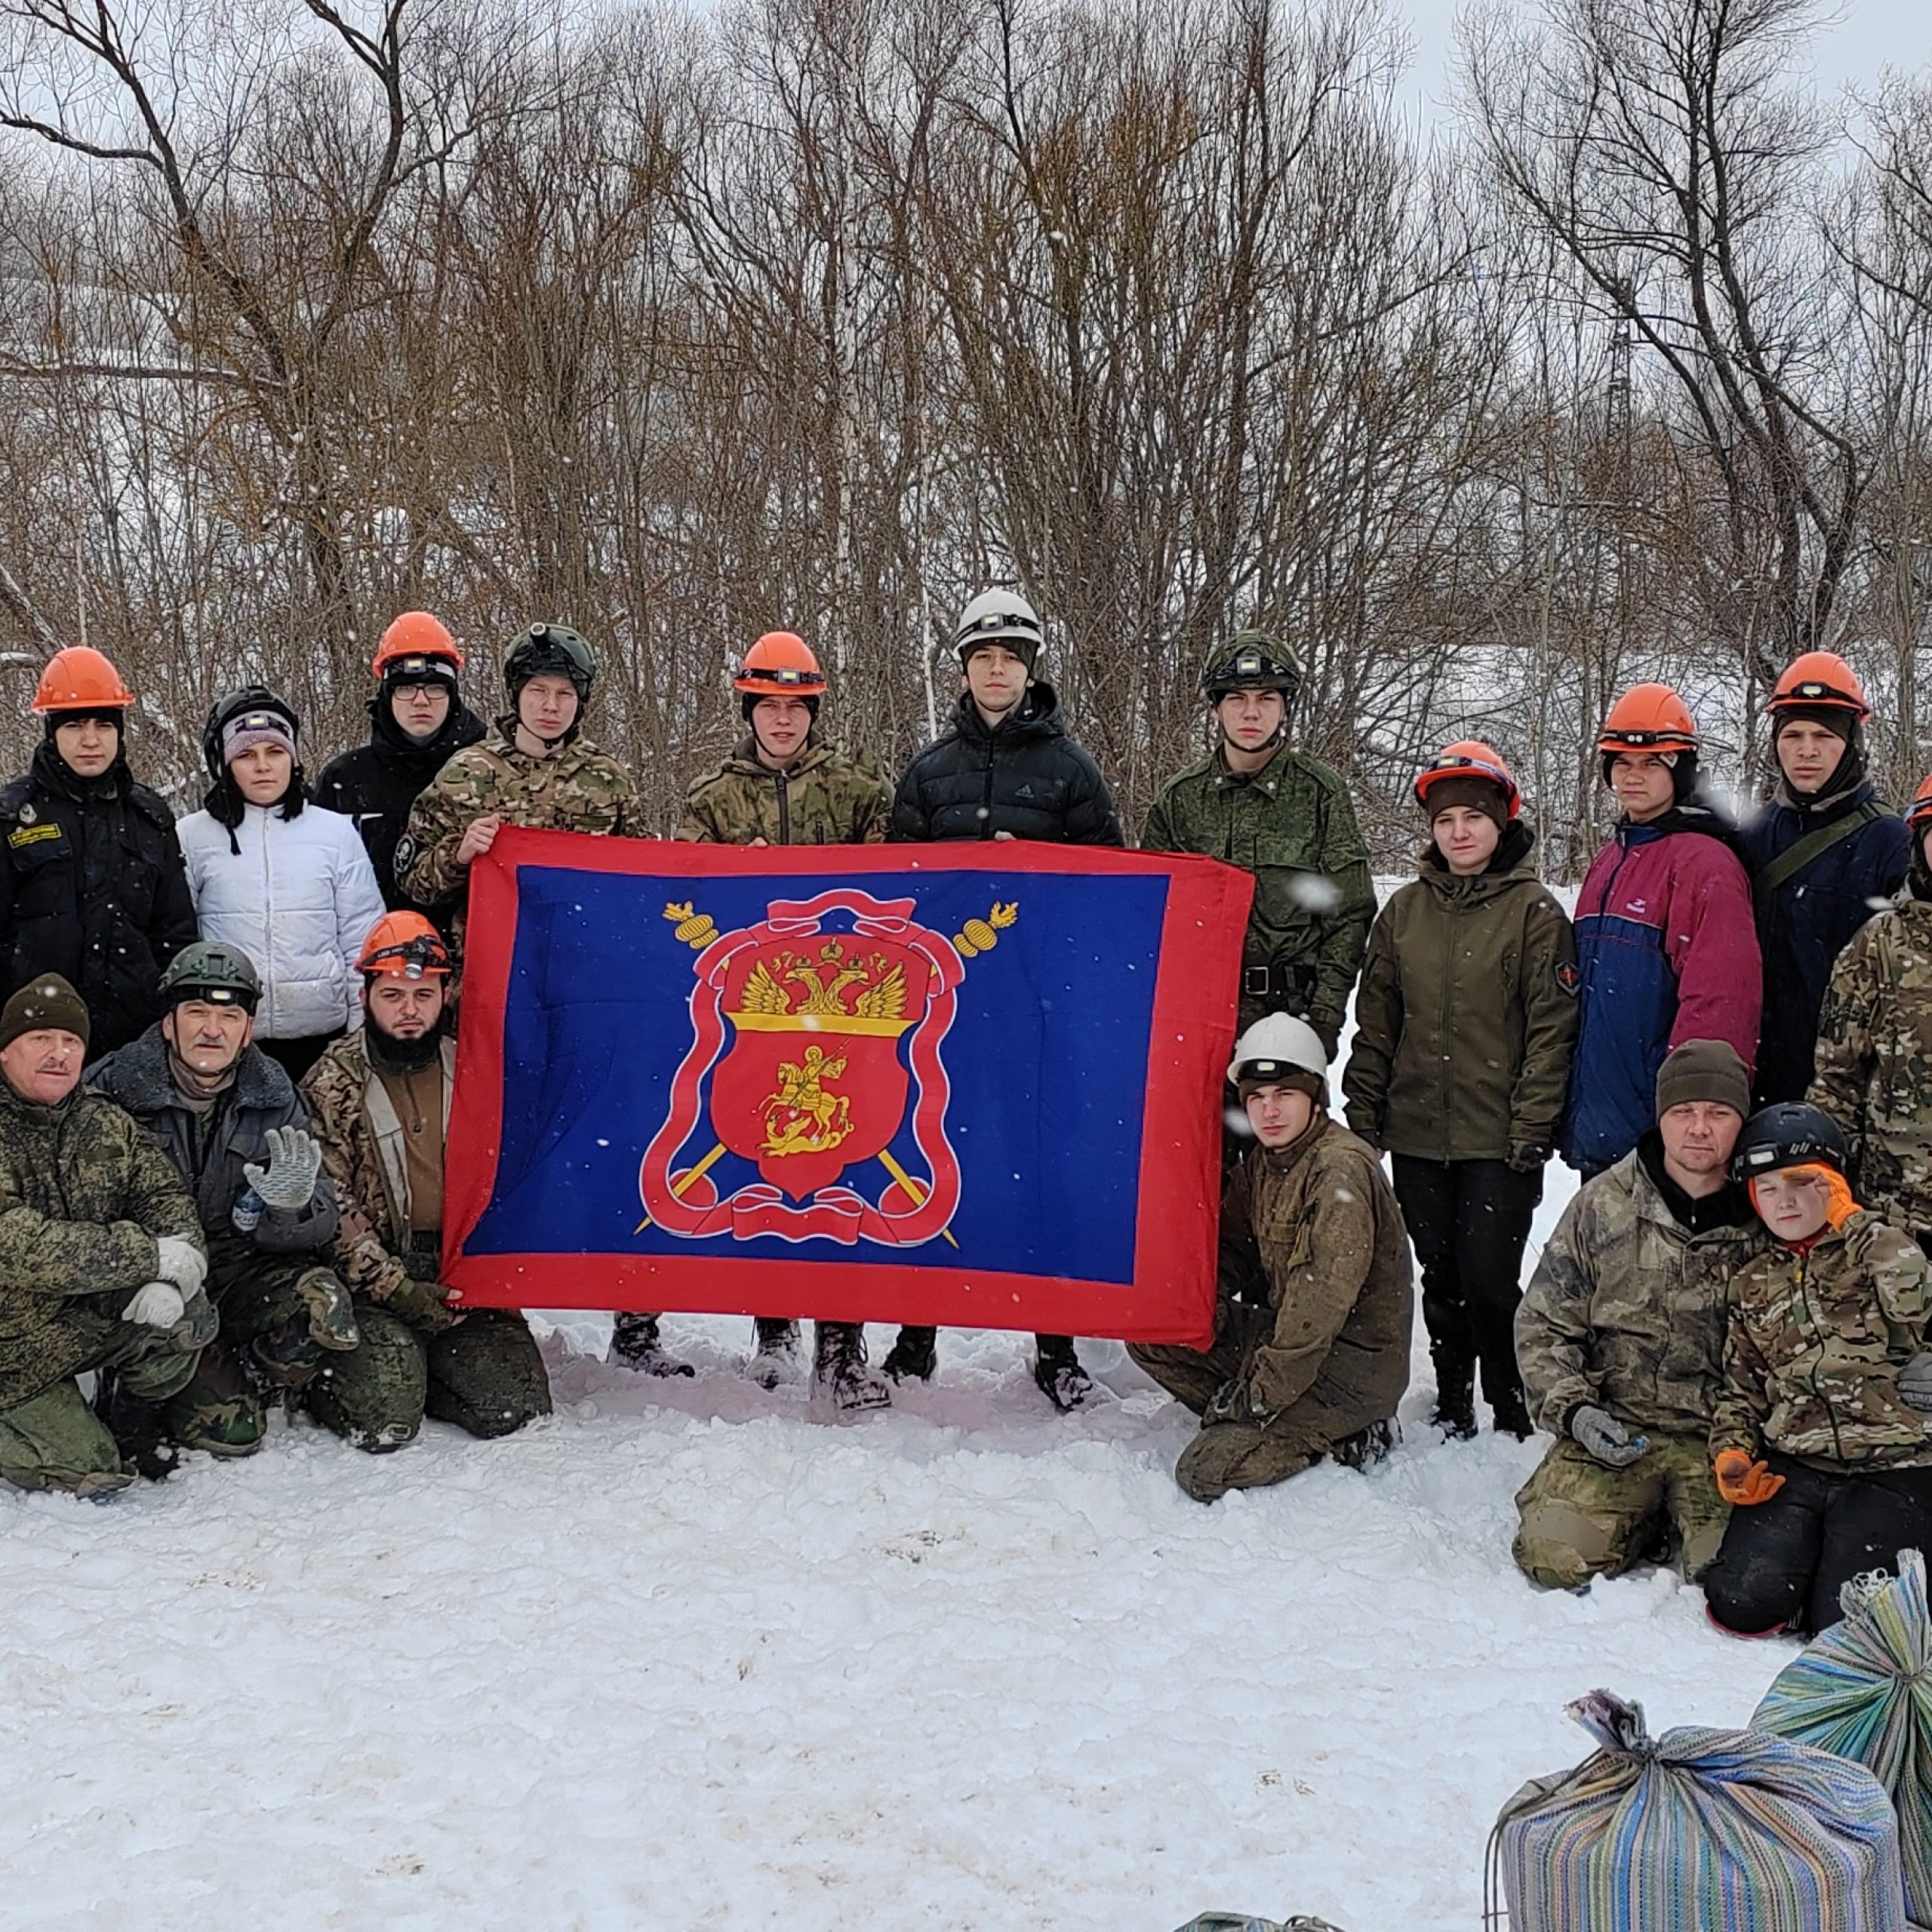 Казачья молодежь Тульской области провела учебно-тренировочные занятия по спасательной подготовке